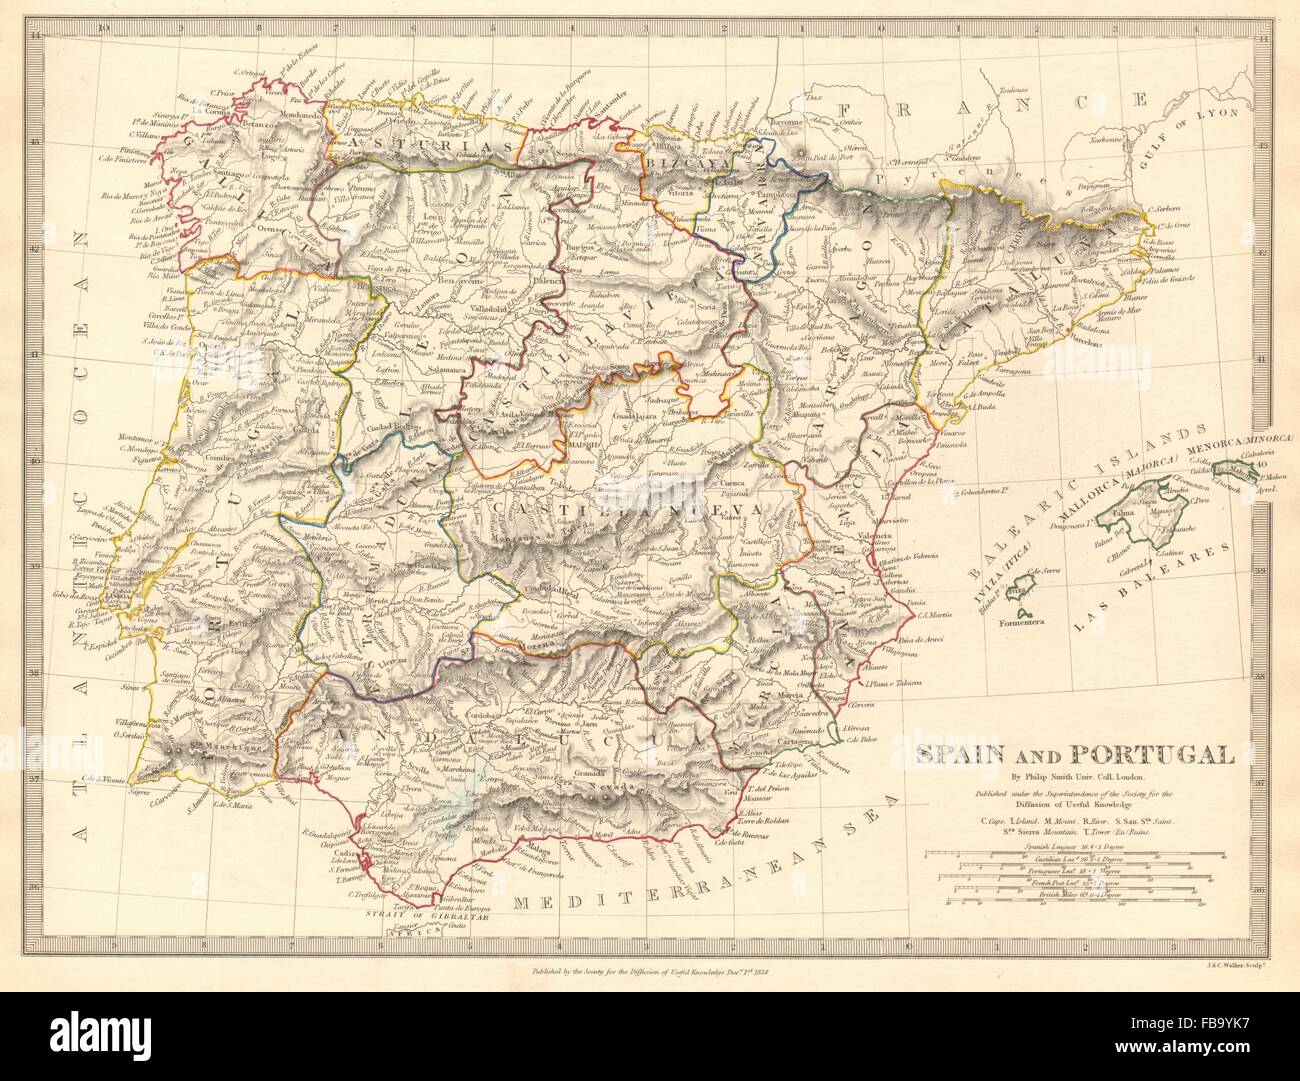 IBERIA. L'Espagne et Portugal montrant des provinces. SDUK, 1844 carte antique Banque D'Images